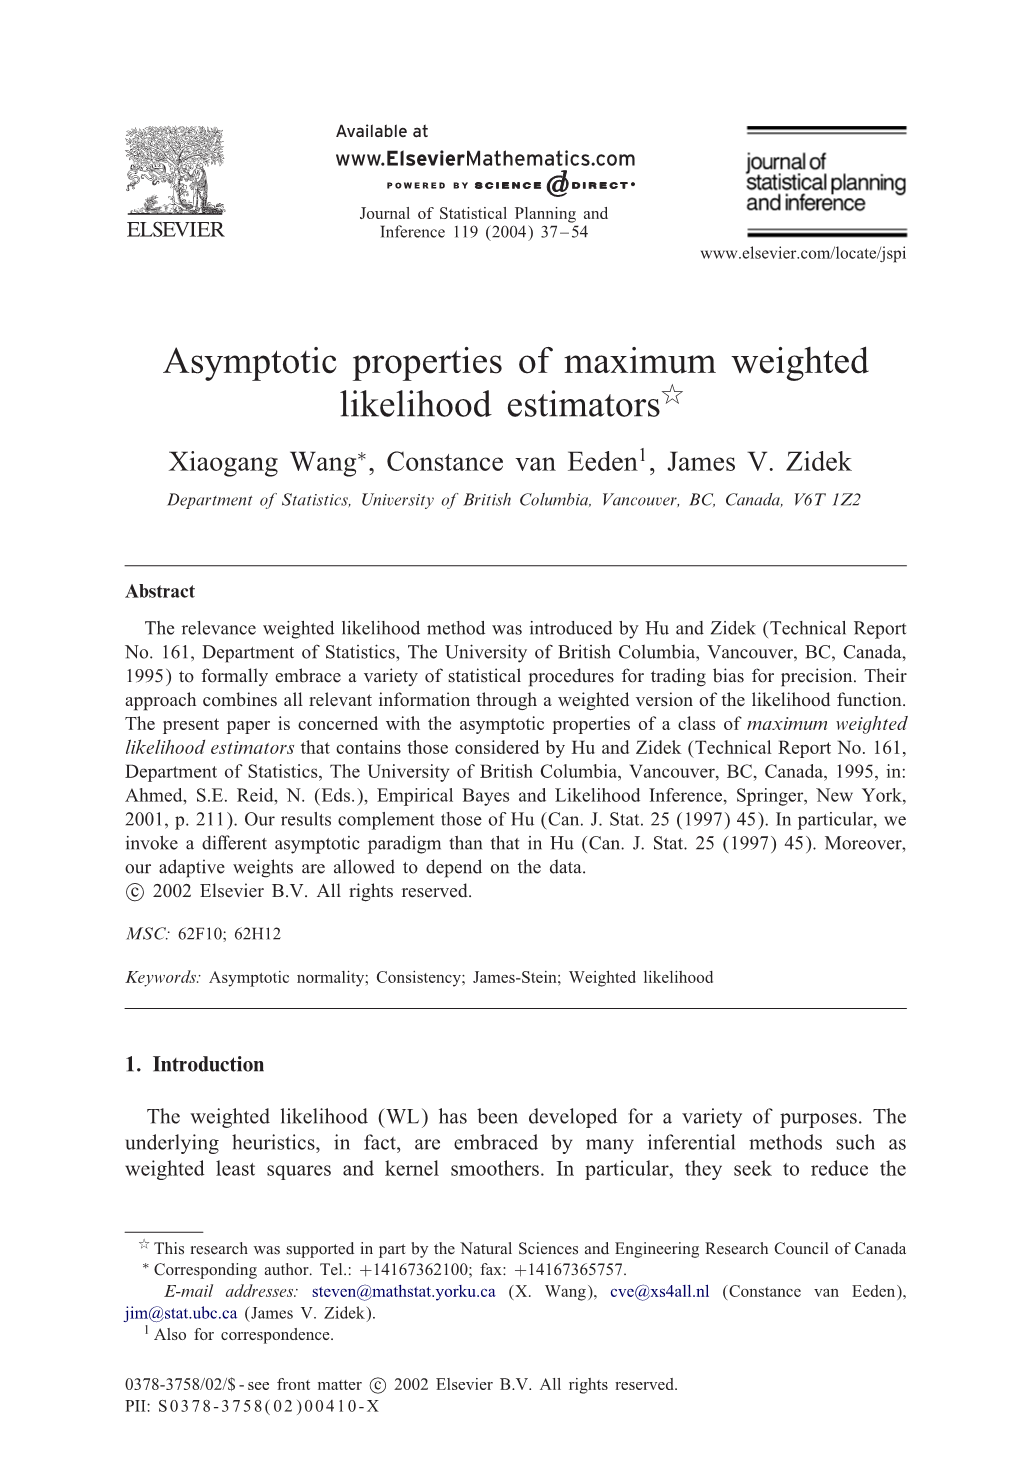 Asymptotic Properties of Maximum Weighted Likelihood Estimators Xiaogang Wang∗, Constance Van Eeden1, James V